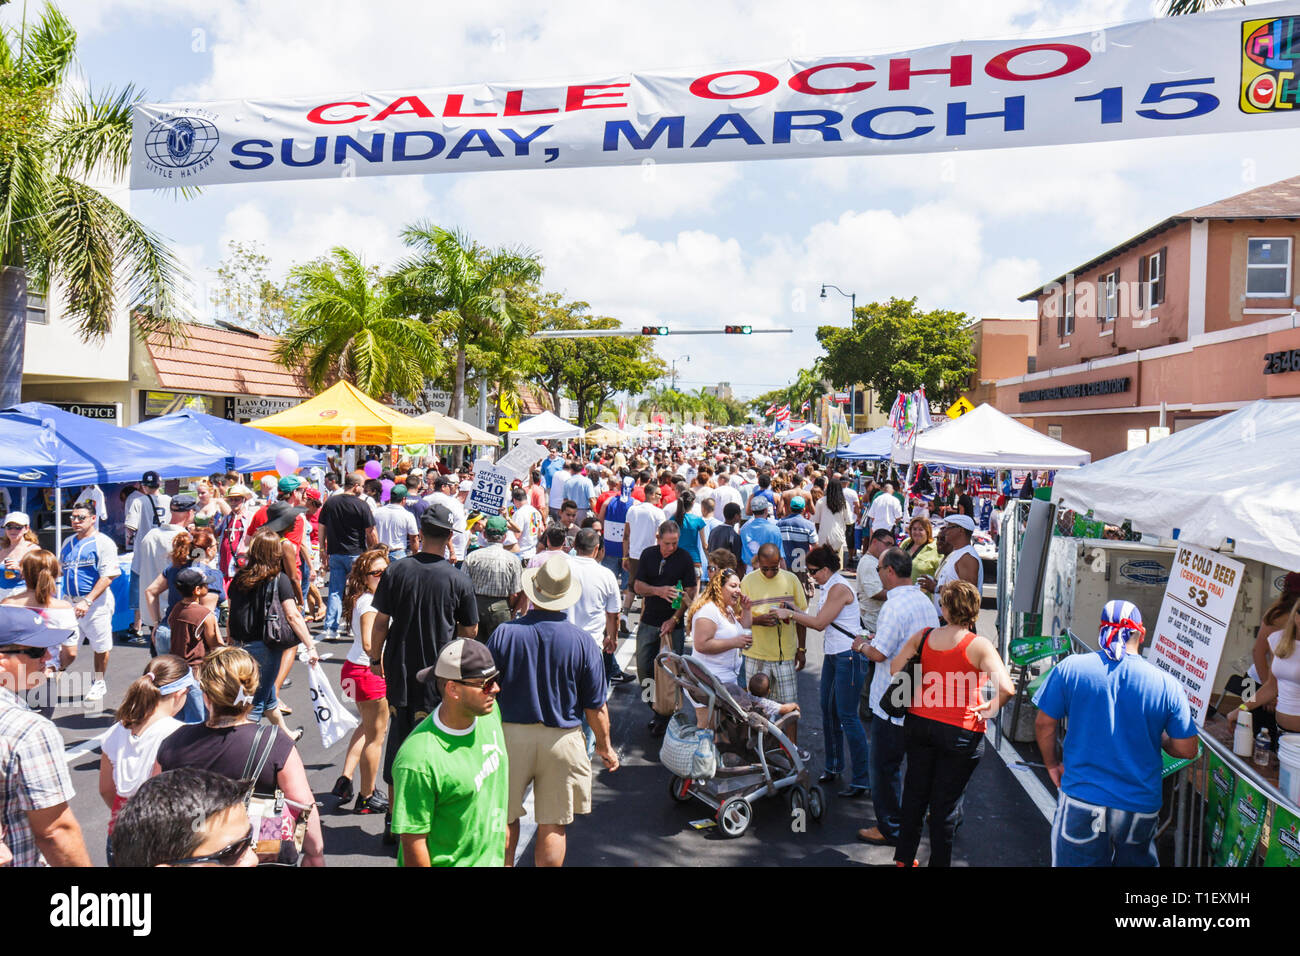 Miami Florida,Little Havana,Calle Ocho,festival,Street fair,Hispanic man hommes, femme femmes,multi ethnique,foule,marche,marche,stalle,stalles Banque D'Images